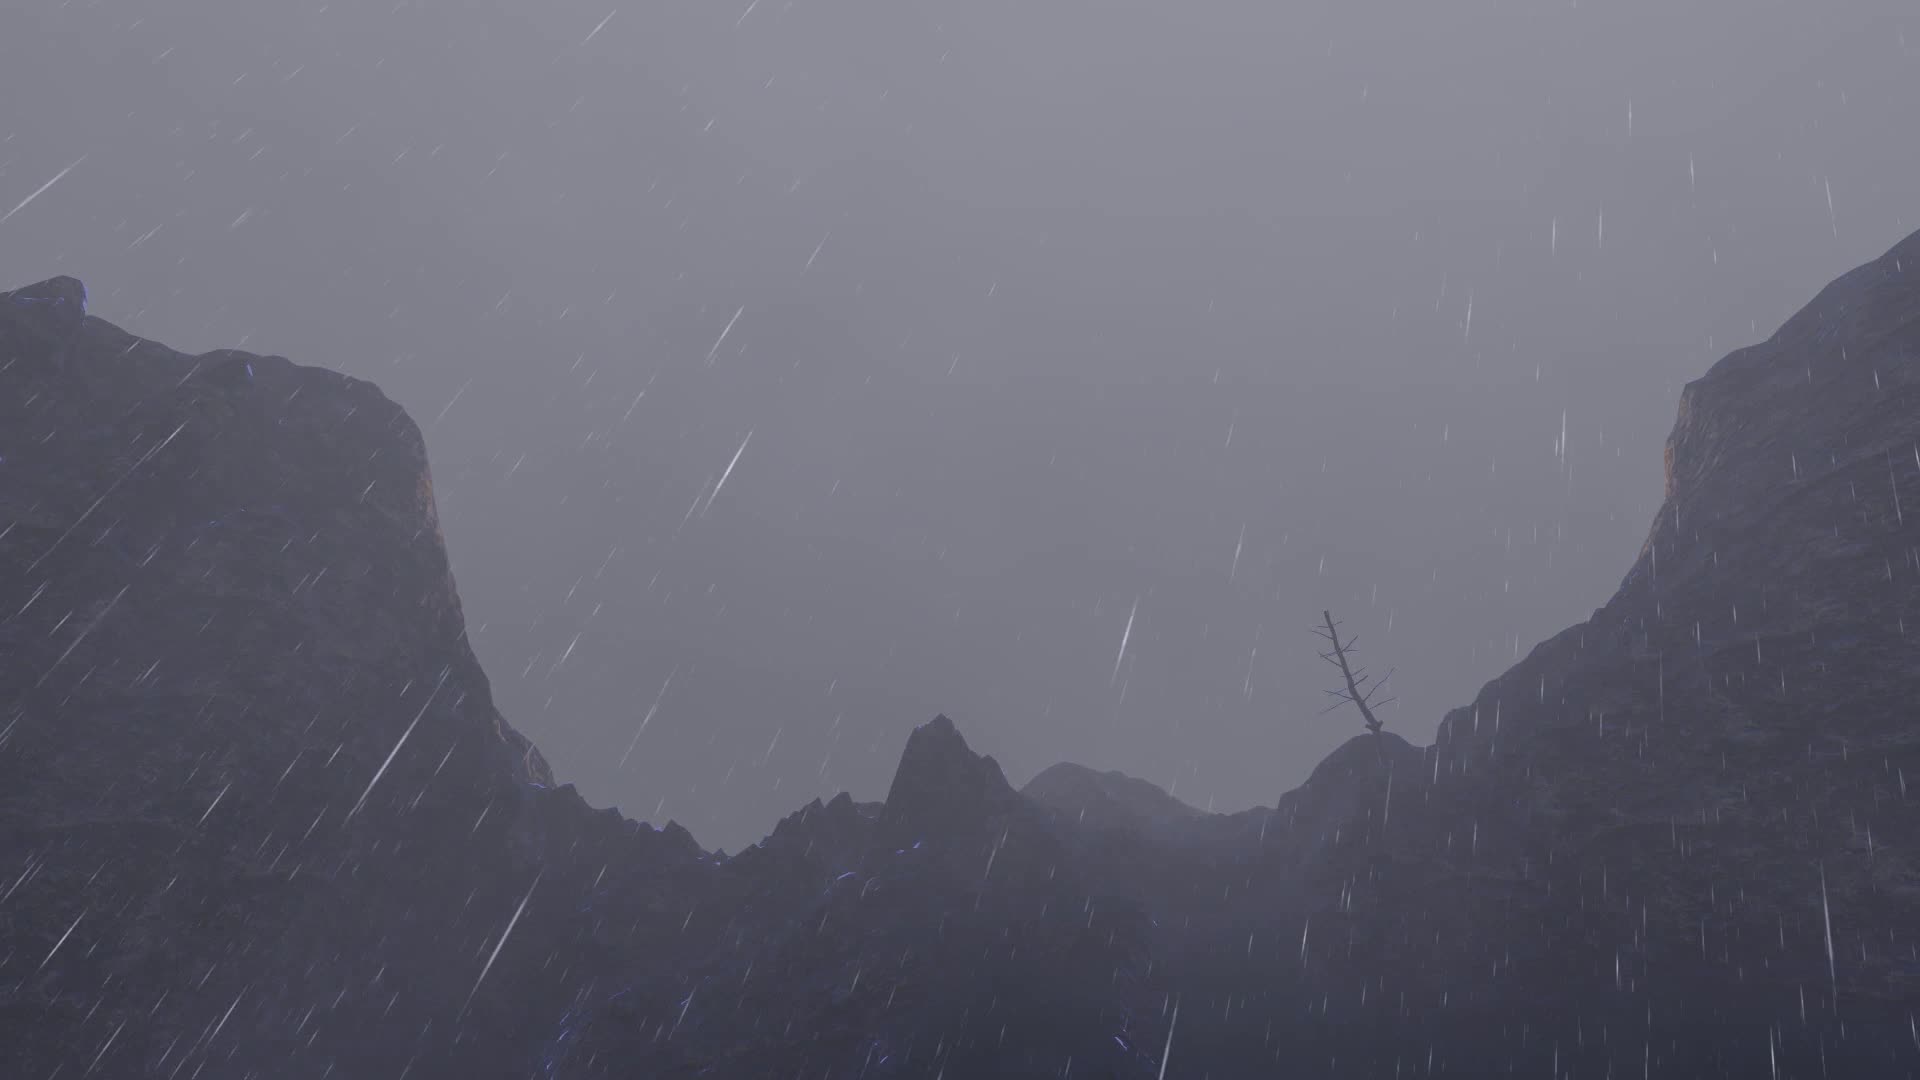 荒郊野外悬崖场景02-打雷下雨